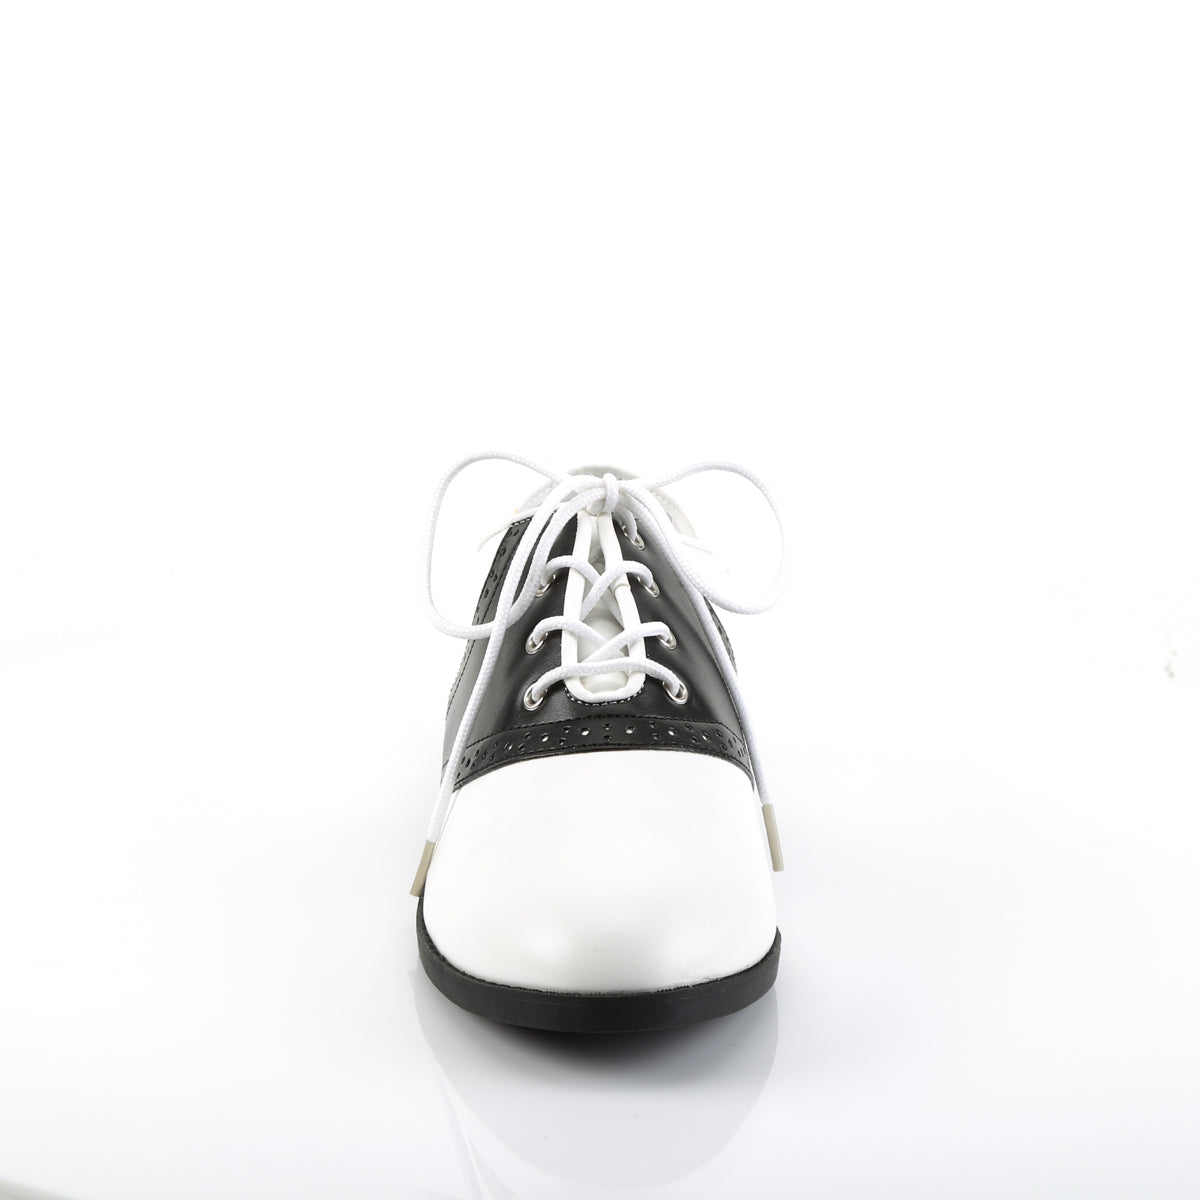 SADDLE-50 Funtasma Black and White Women's Costume Shoes Funtasma Costume Shoes Alternative Footwear